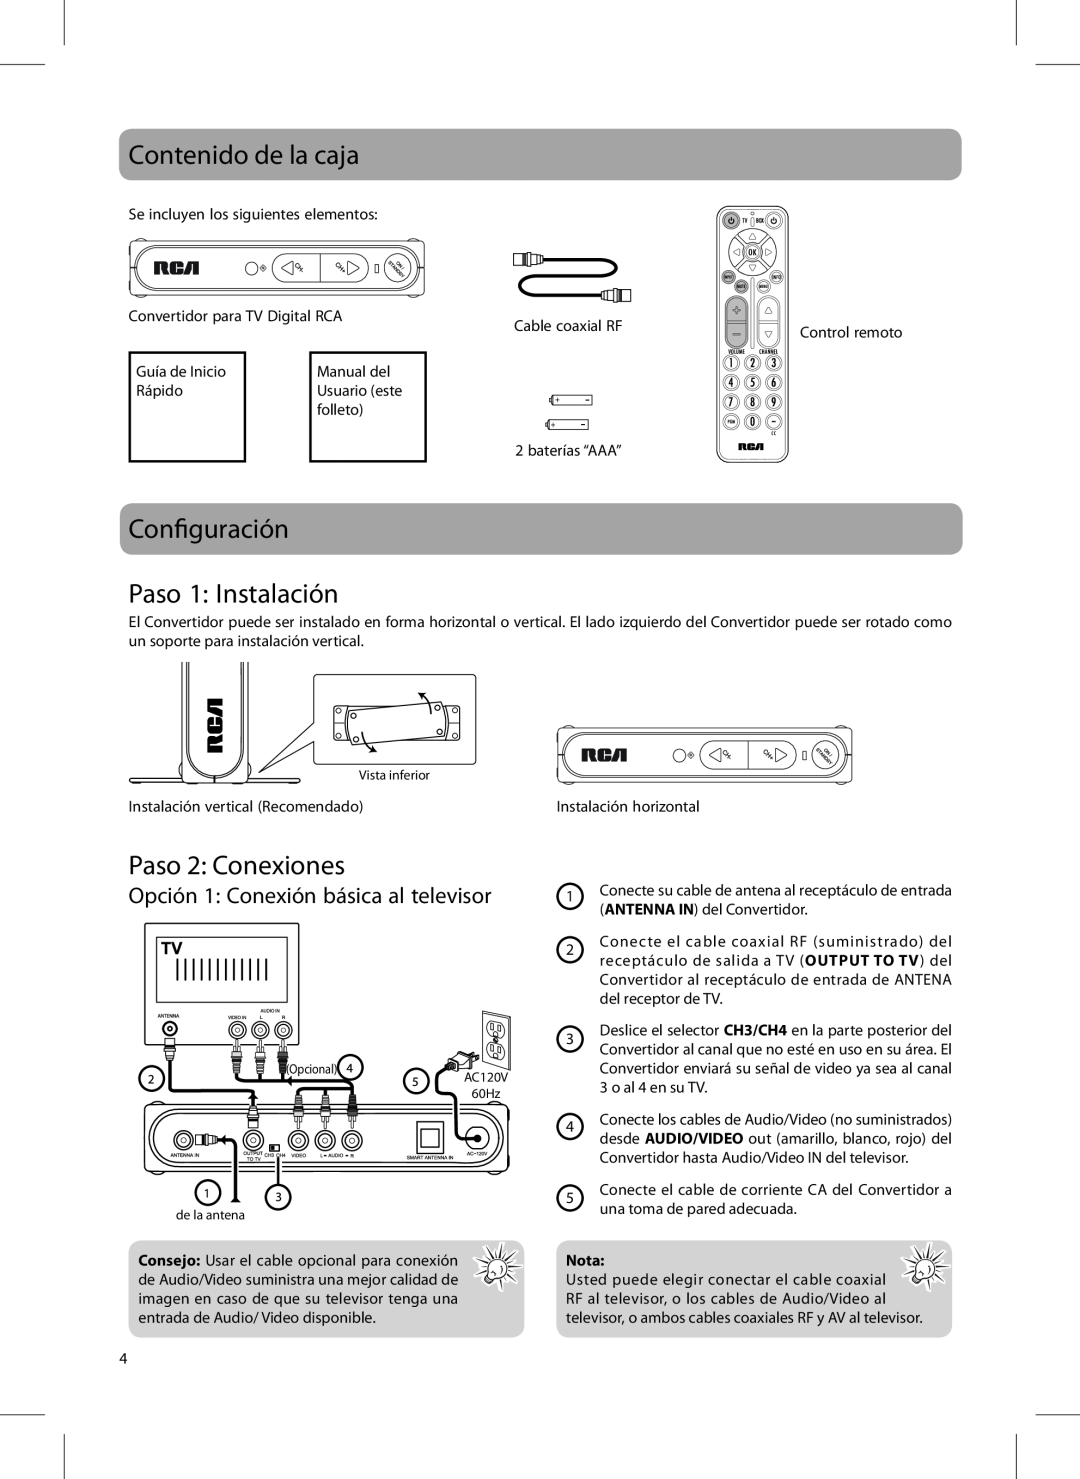 RCA 811-DTA891W030, DTA800B1L user manual Contenido de la caja, Configuración Paso 1 Instalación, Paso 2 Conexiones 